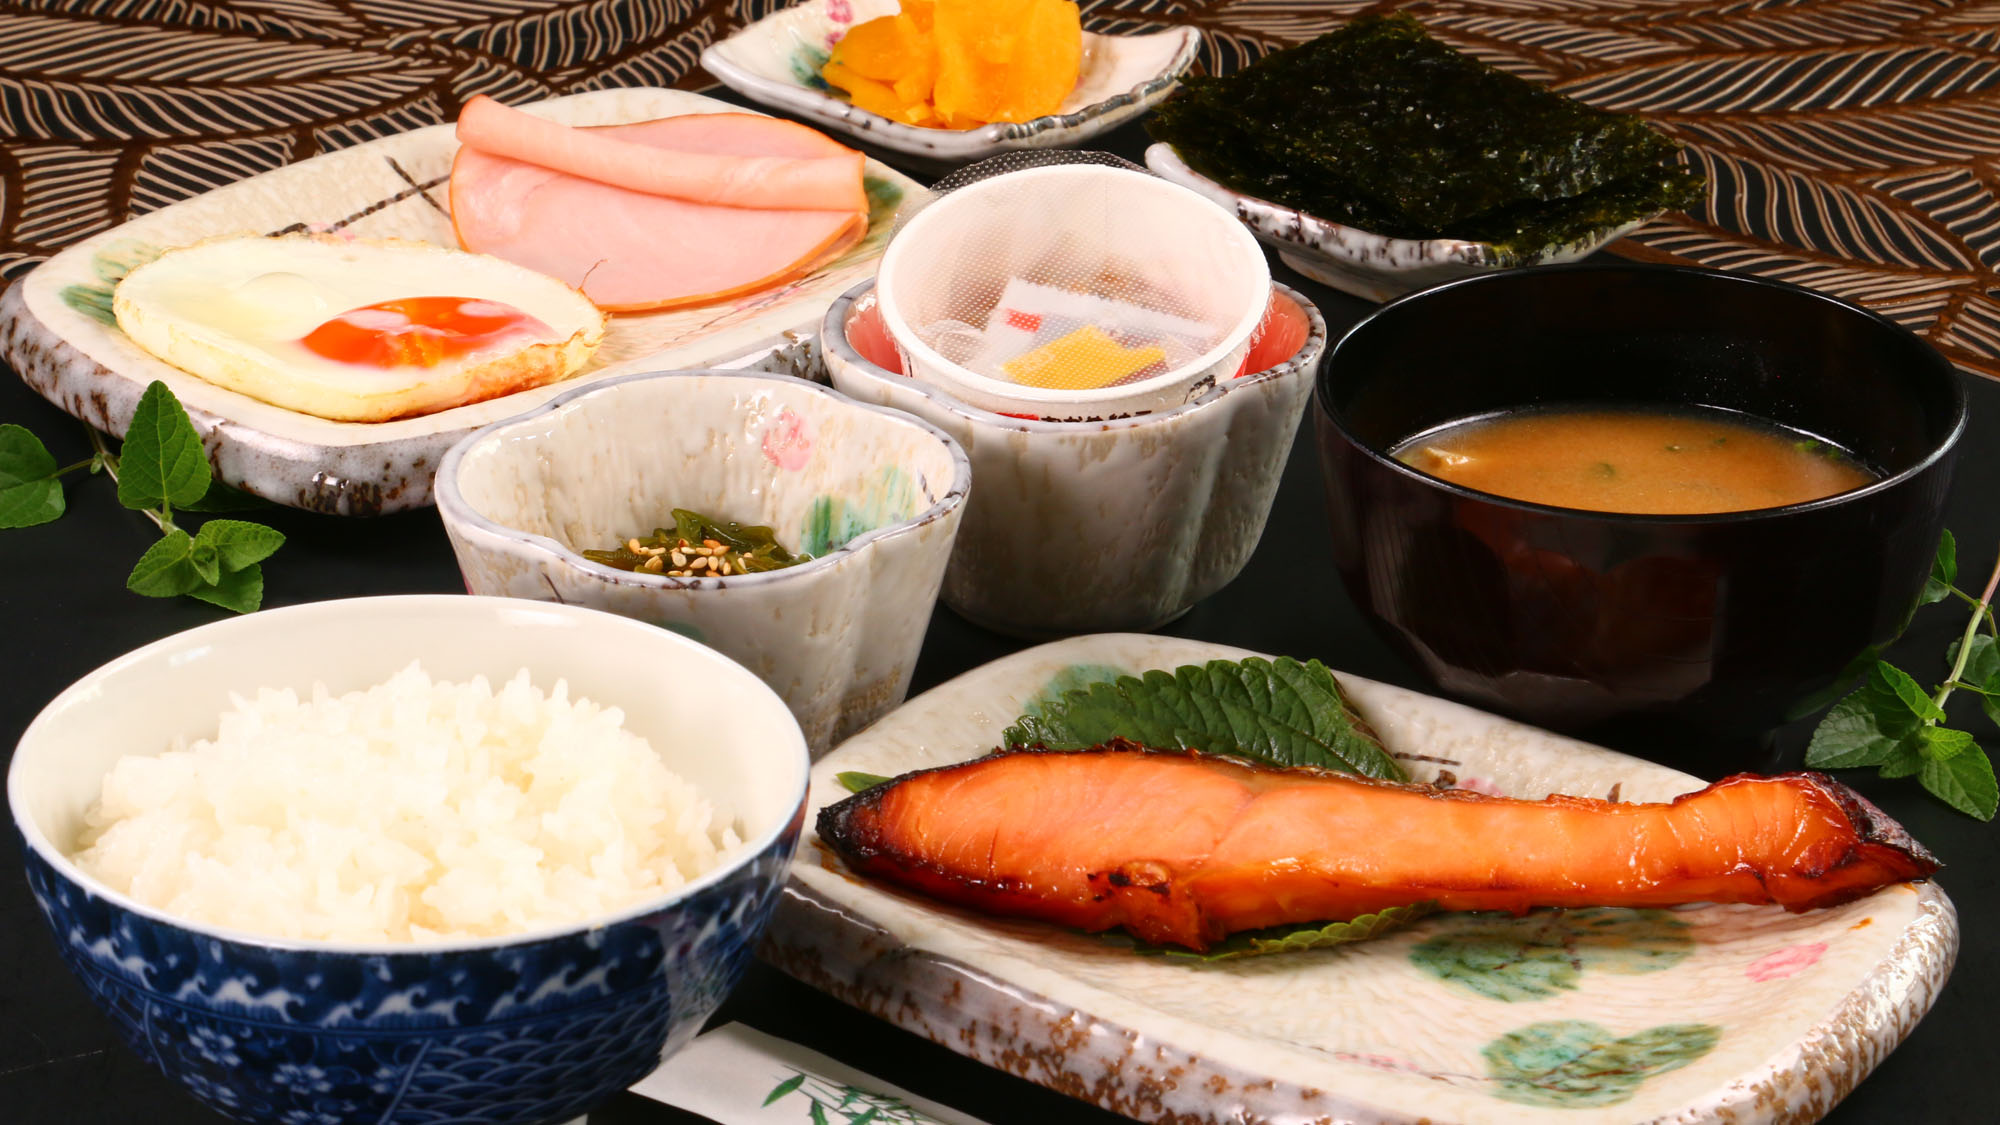 【朝食】焼き魚メイン料理の朝食一例★朝から健康なメニューです*